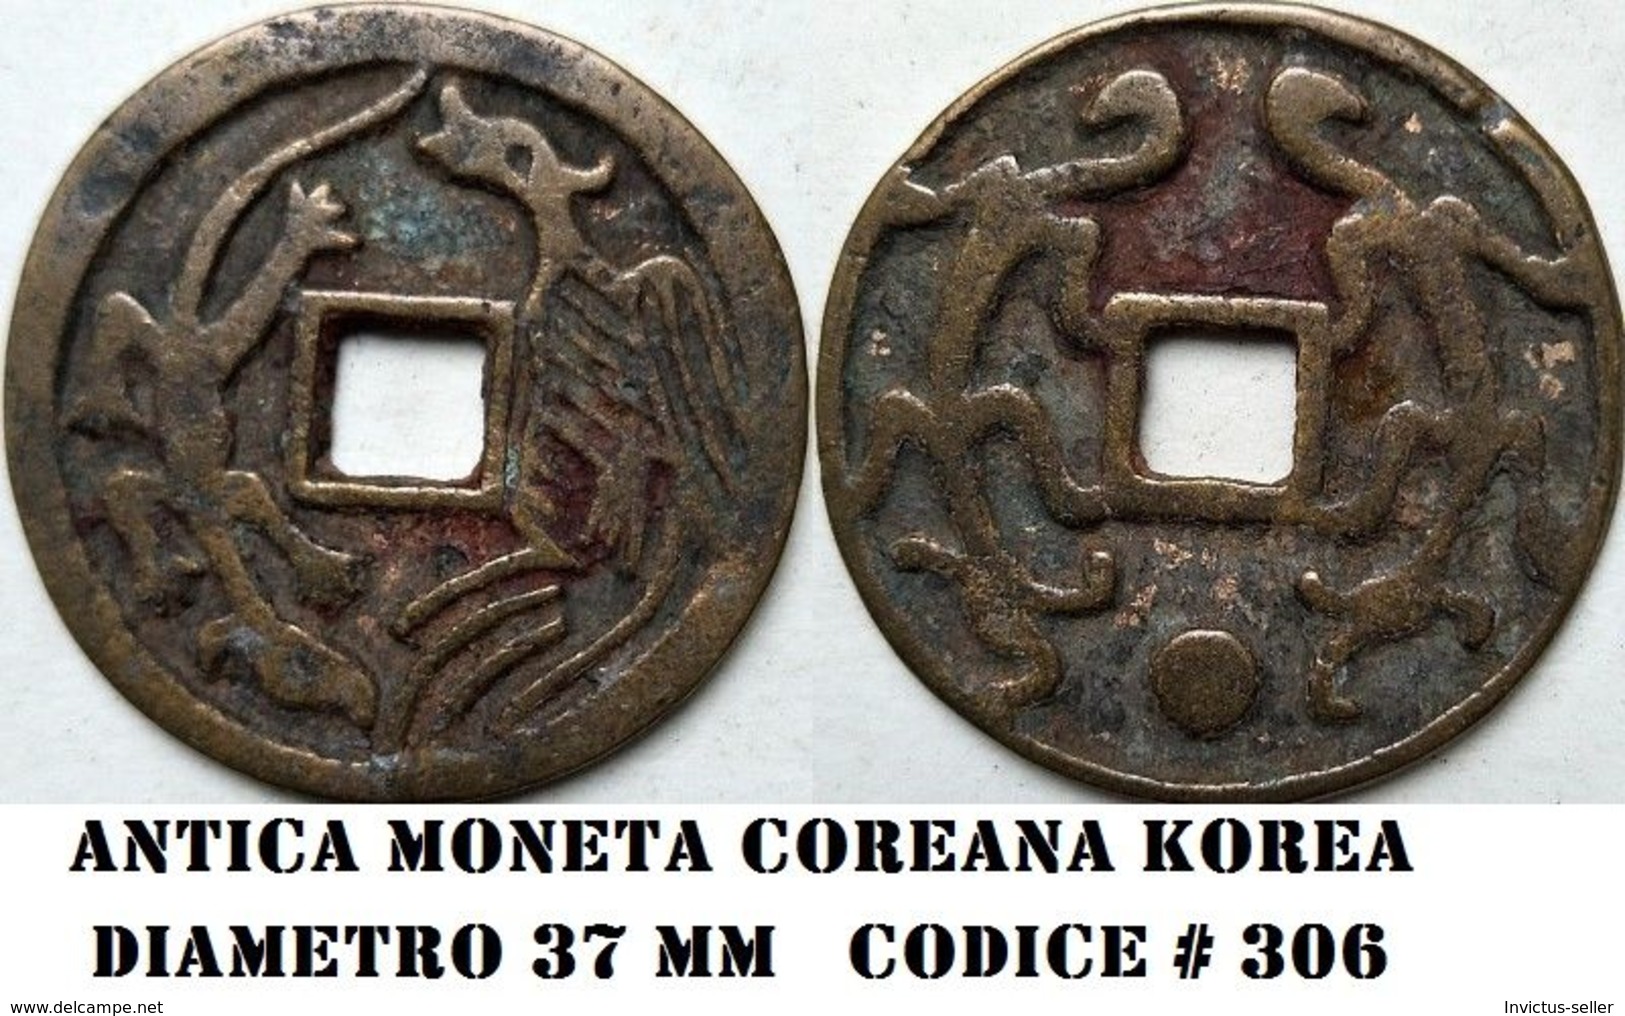 KOREA ANTICA MONETA COREANA PERIODO IMPERIALE IMPERIALE COREANE COINS  PIECES MONET COREA IMPERIAL COD #306 - Korea (Nord-)